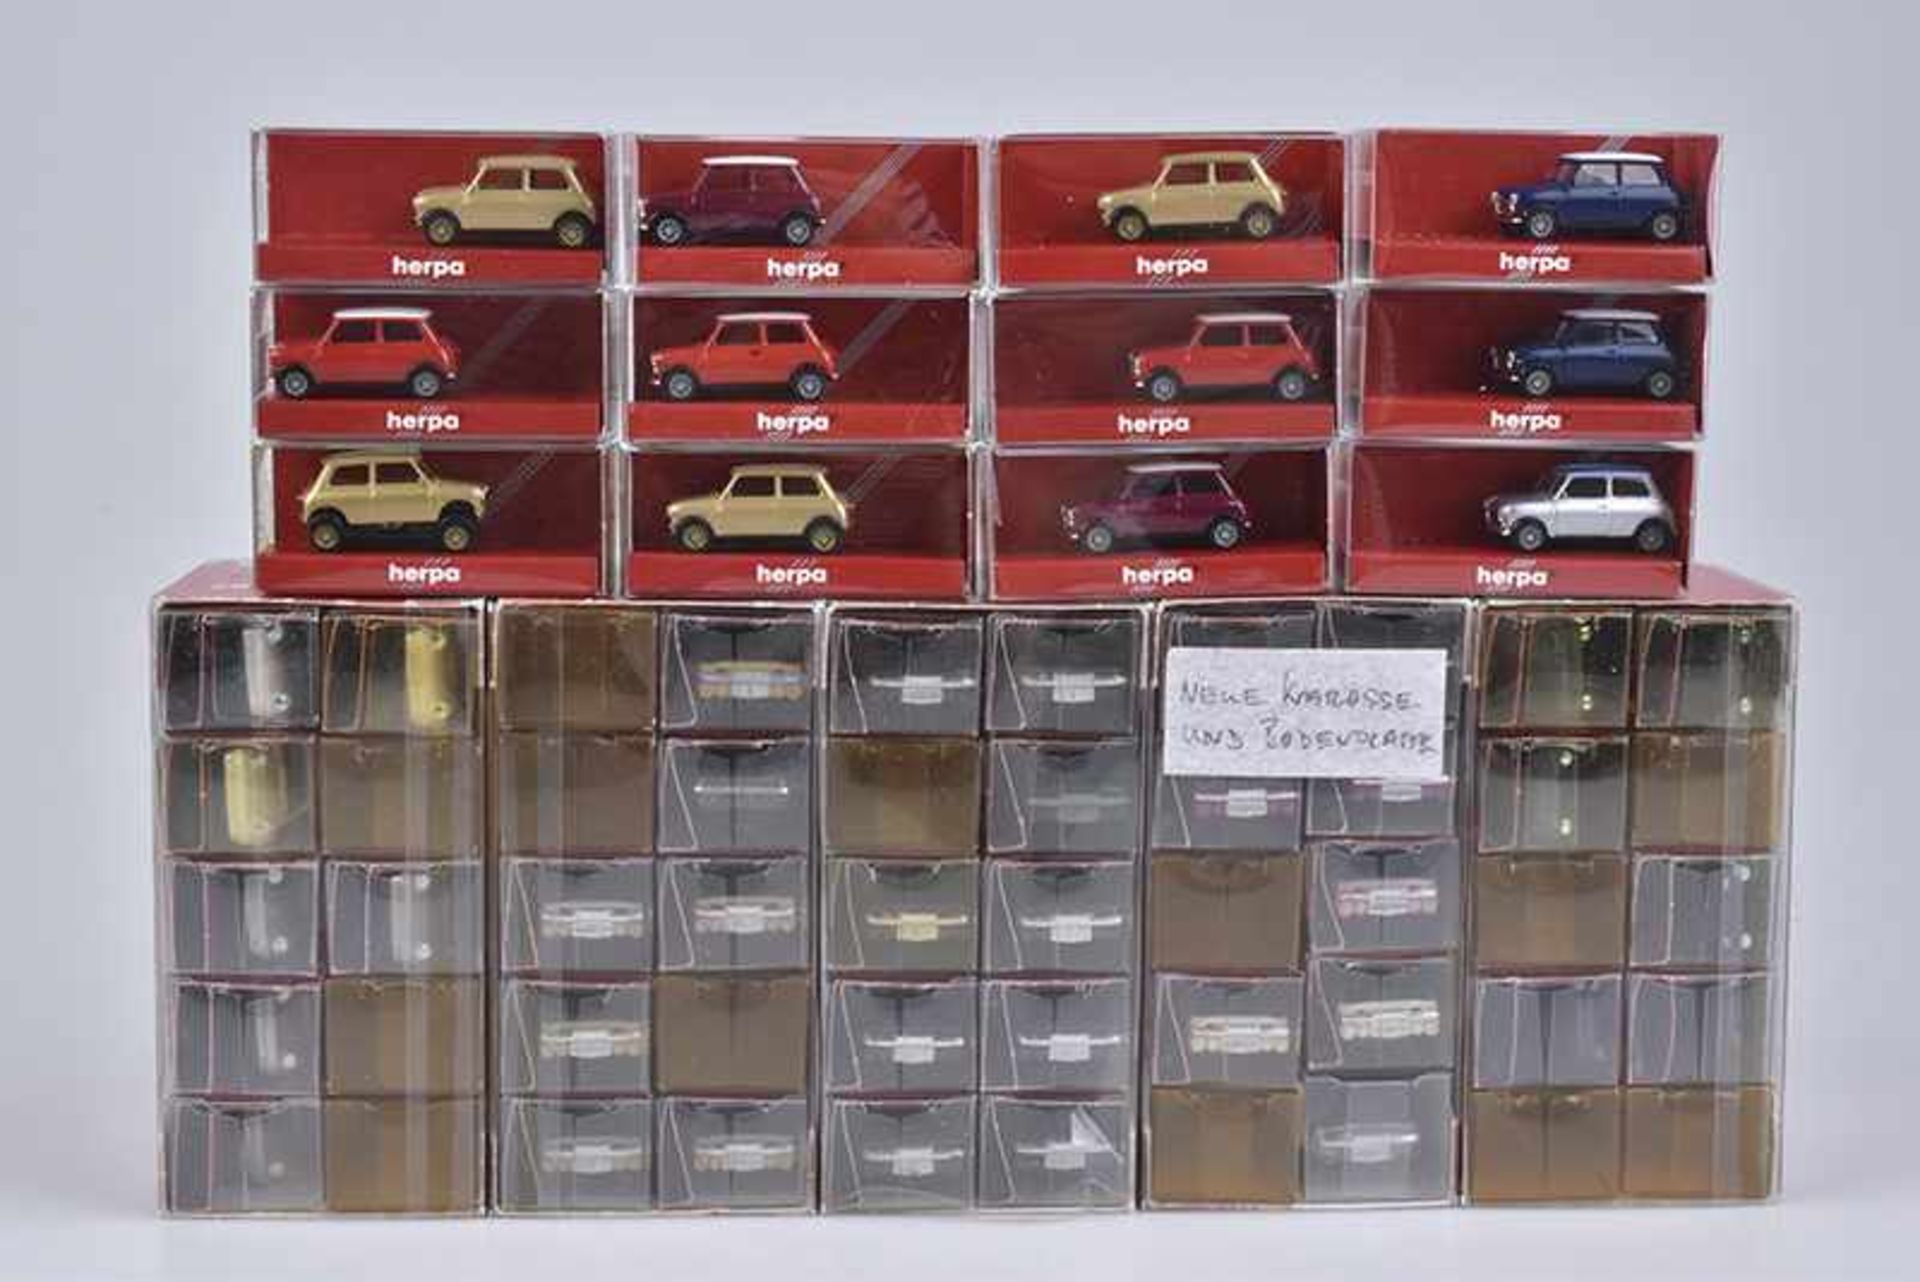 HERPA 50 Modellautos, Hp, M 1:87, Wagener Exclusiv Serie, im Set, darunter 3060 Porsche 911, 2074